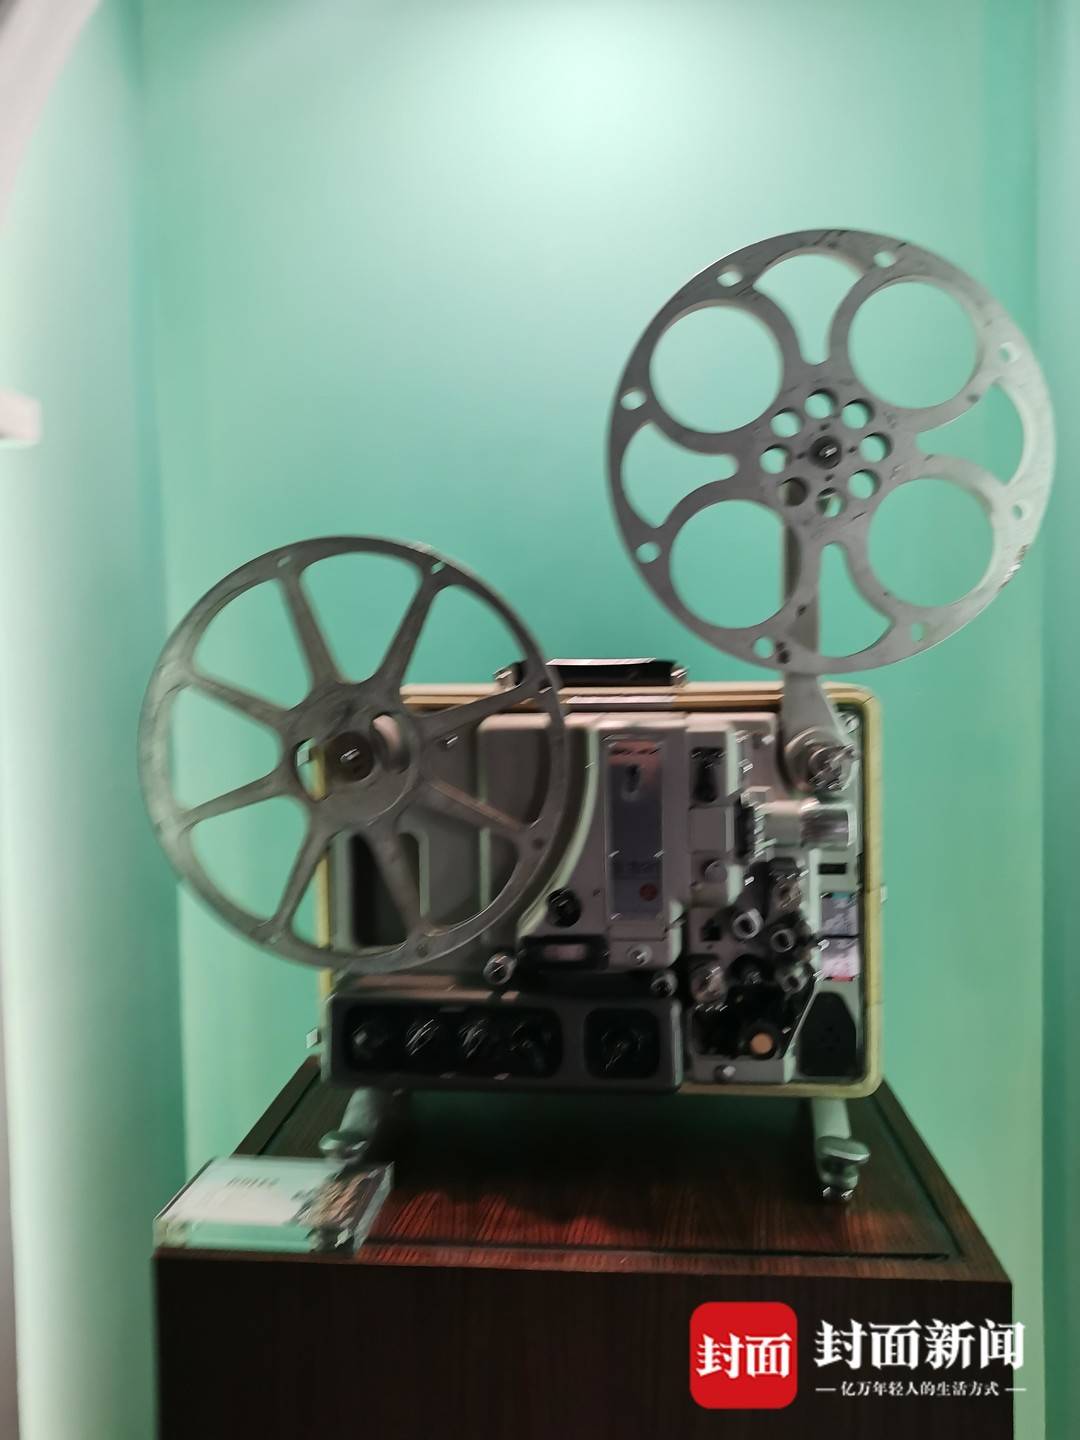 （转载）“百岁”放映机重映老成都影像 成都首个电影轻博物馆今日开馆